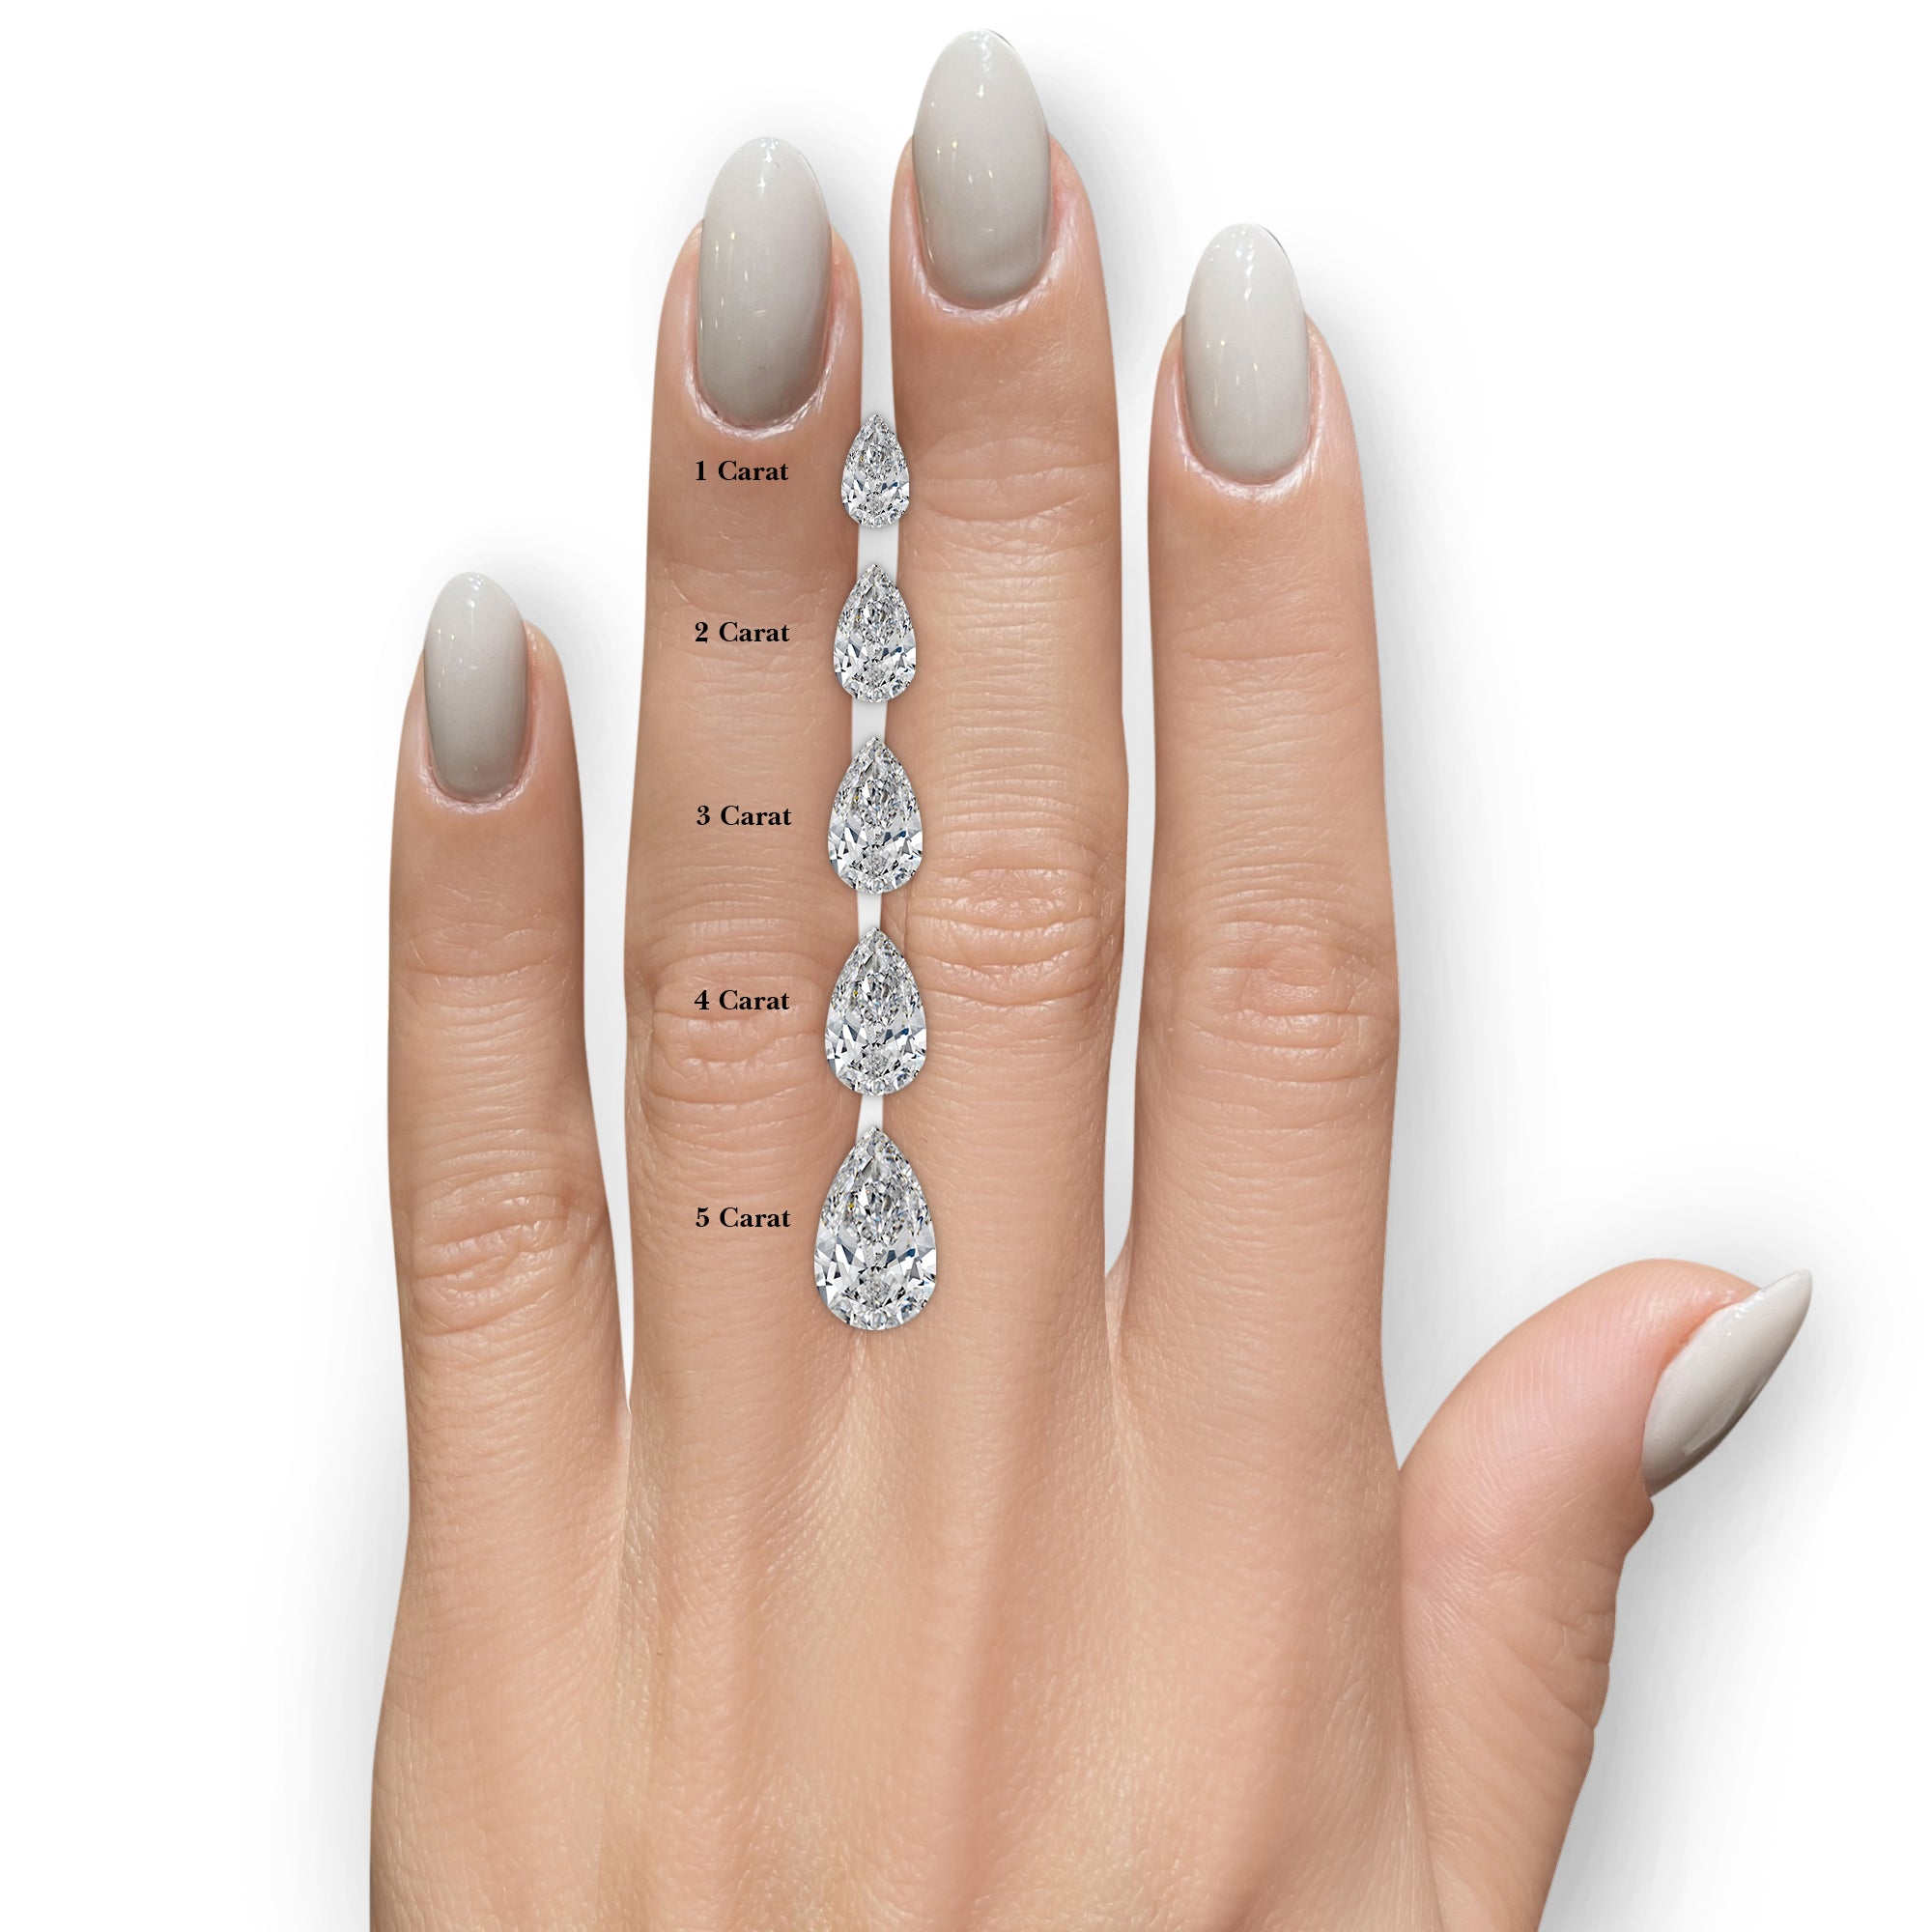 Beverly Diamond Engagement Ring -14K White Gold